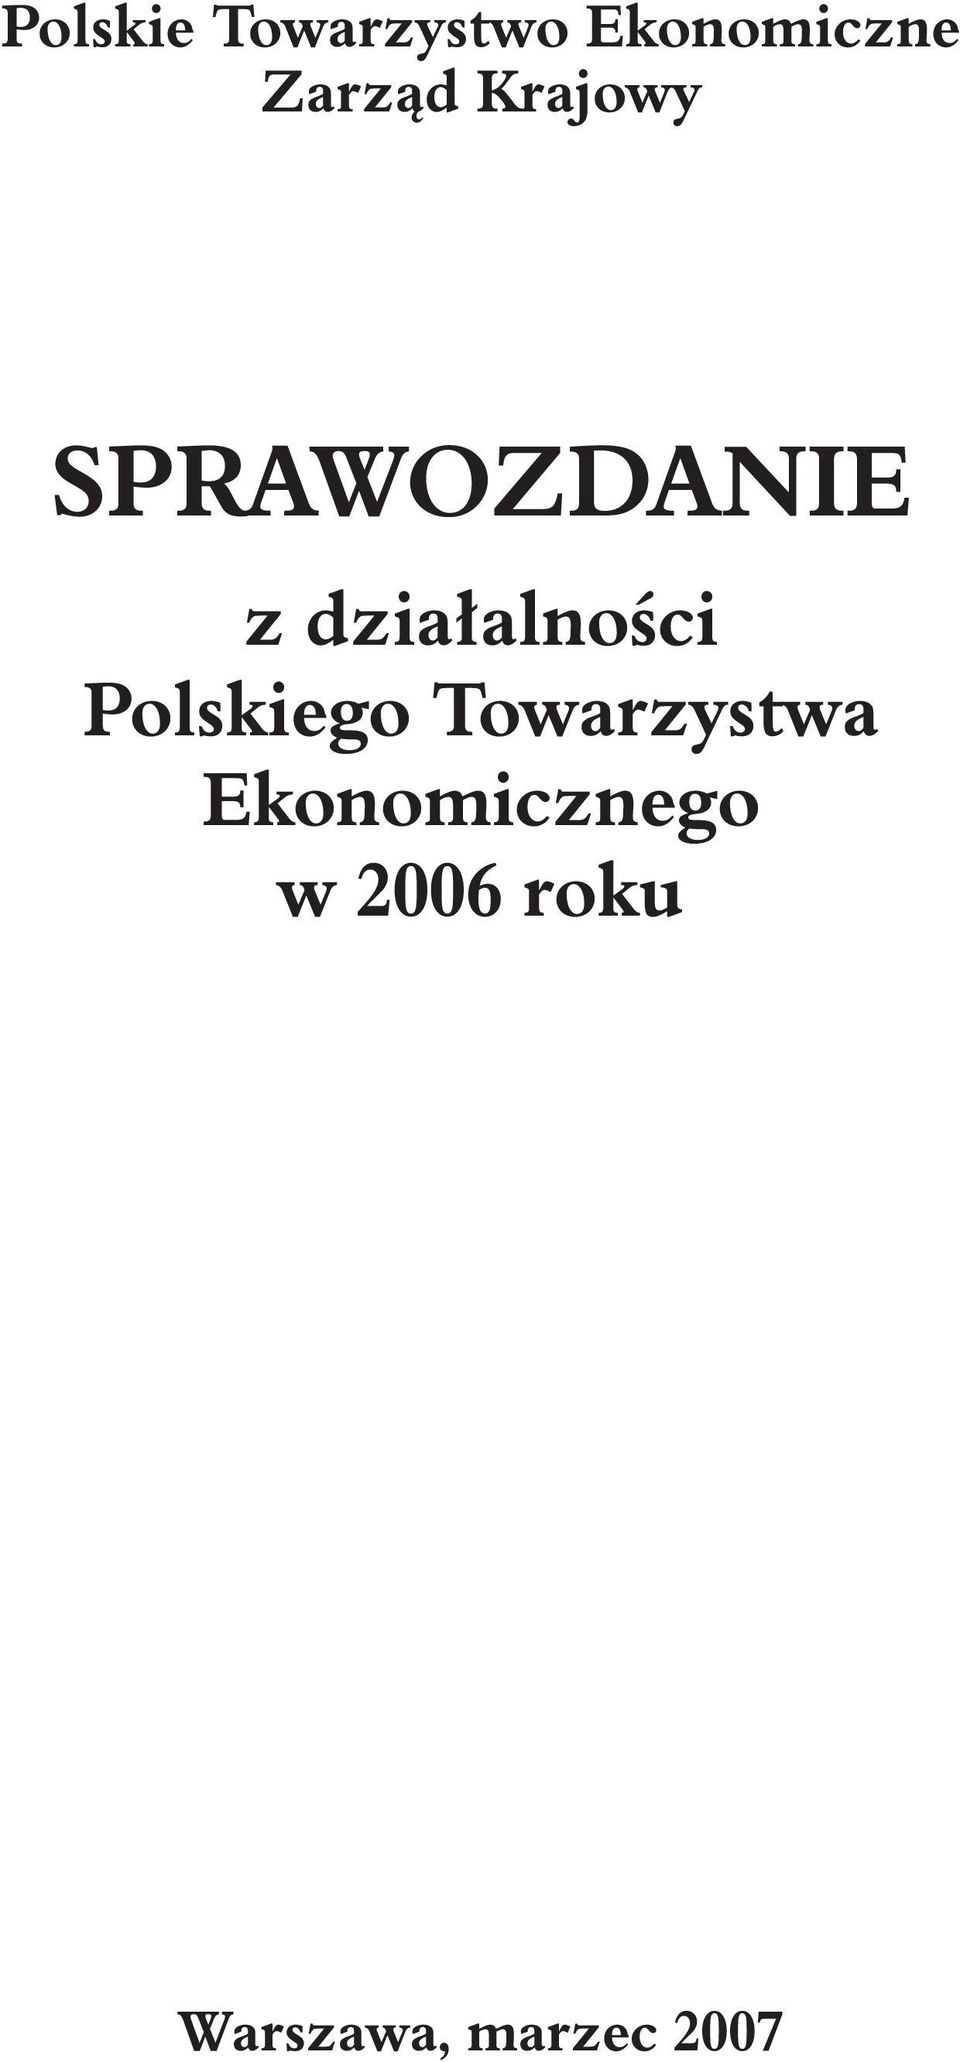 dzia³alnoœci Polskiego Towarzystwa